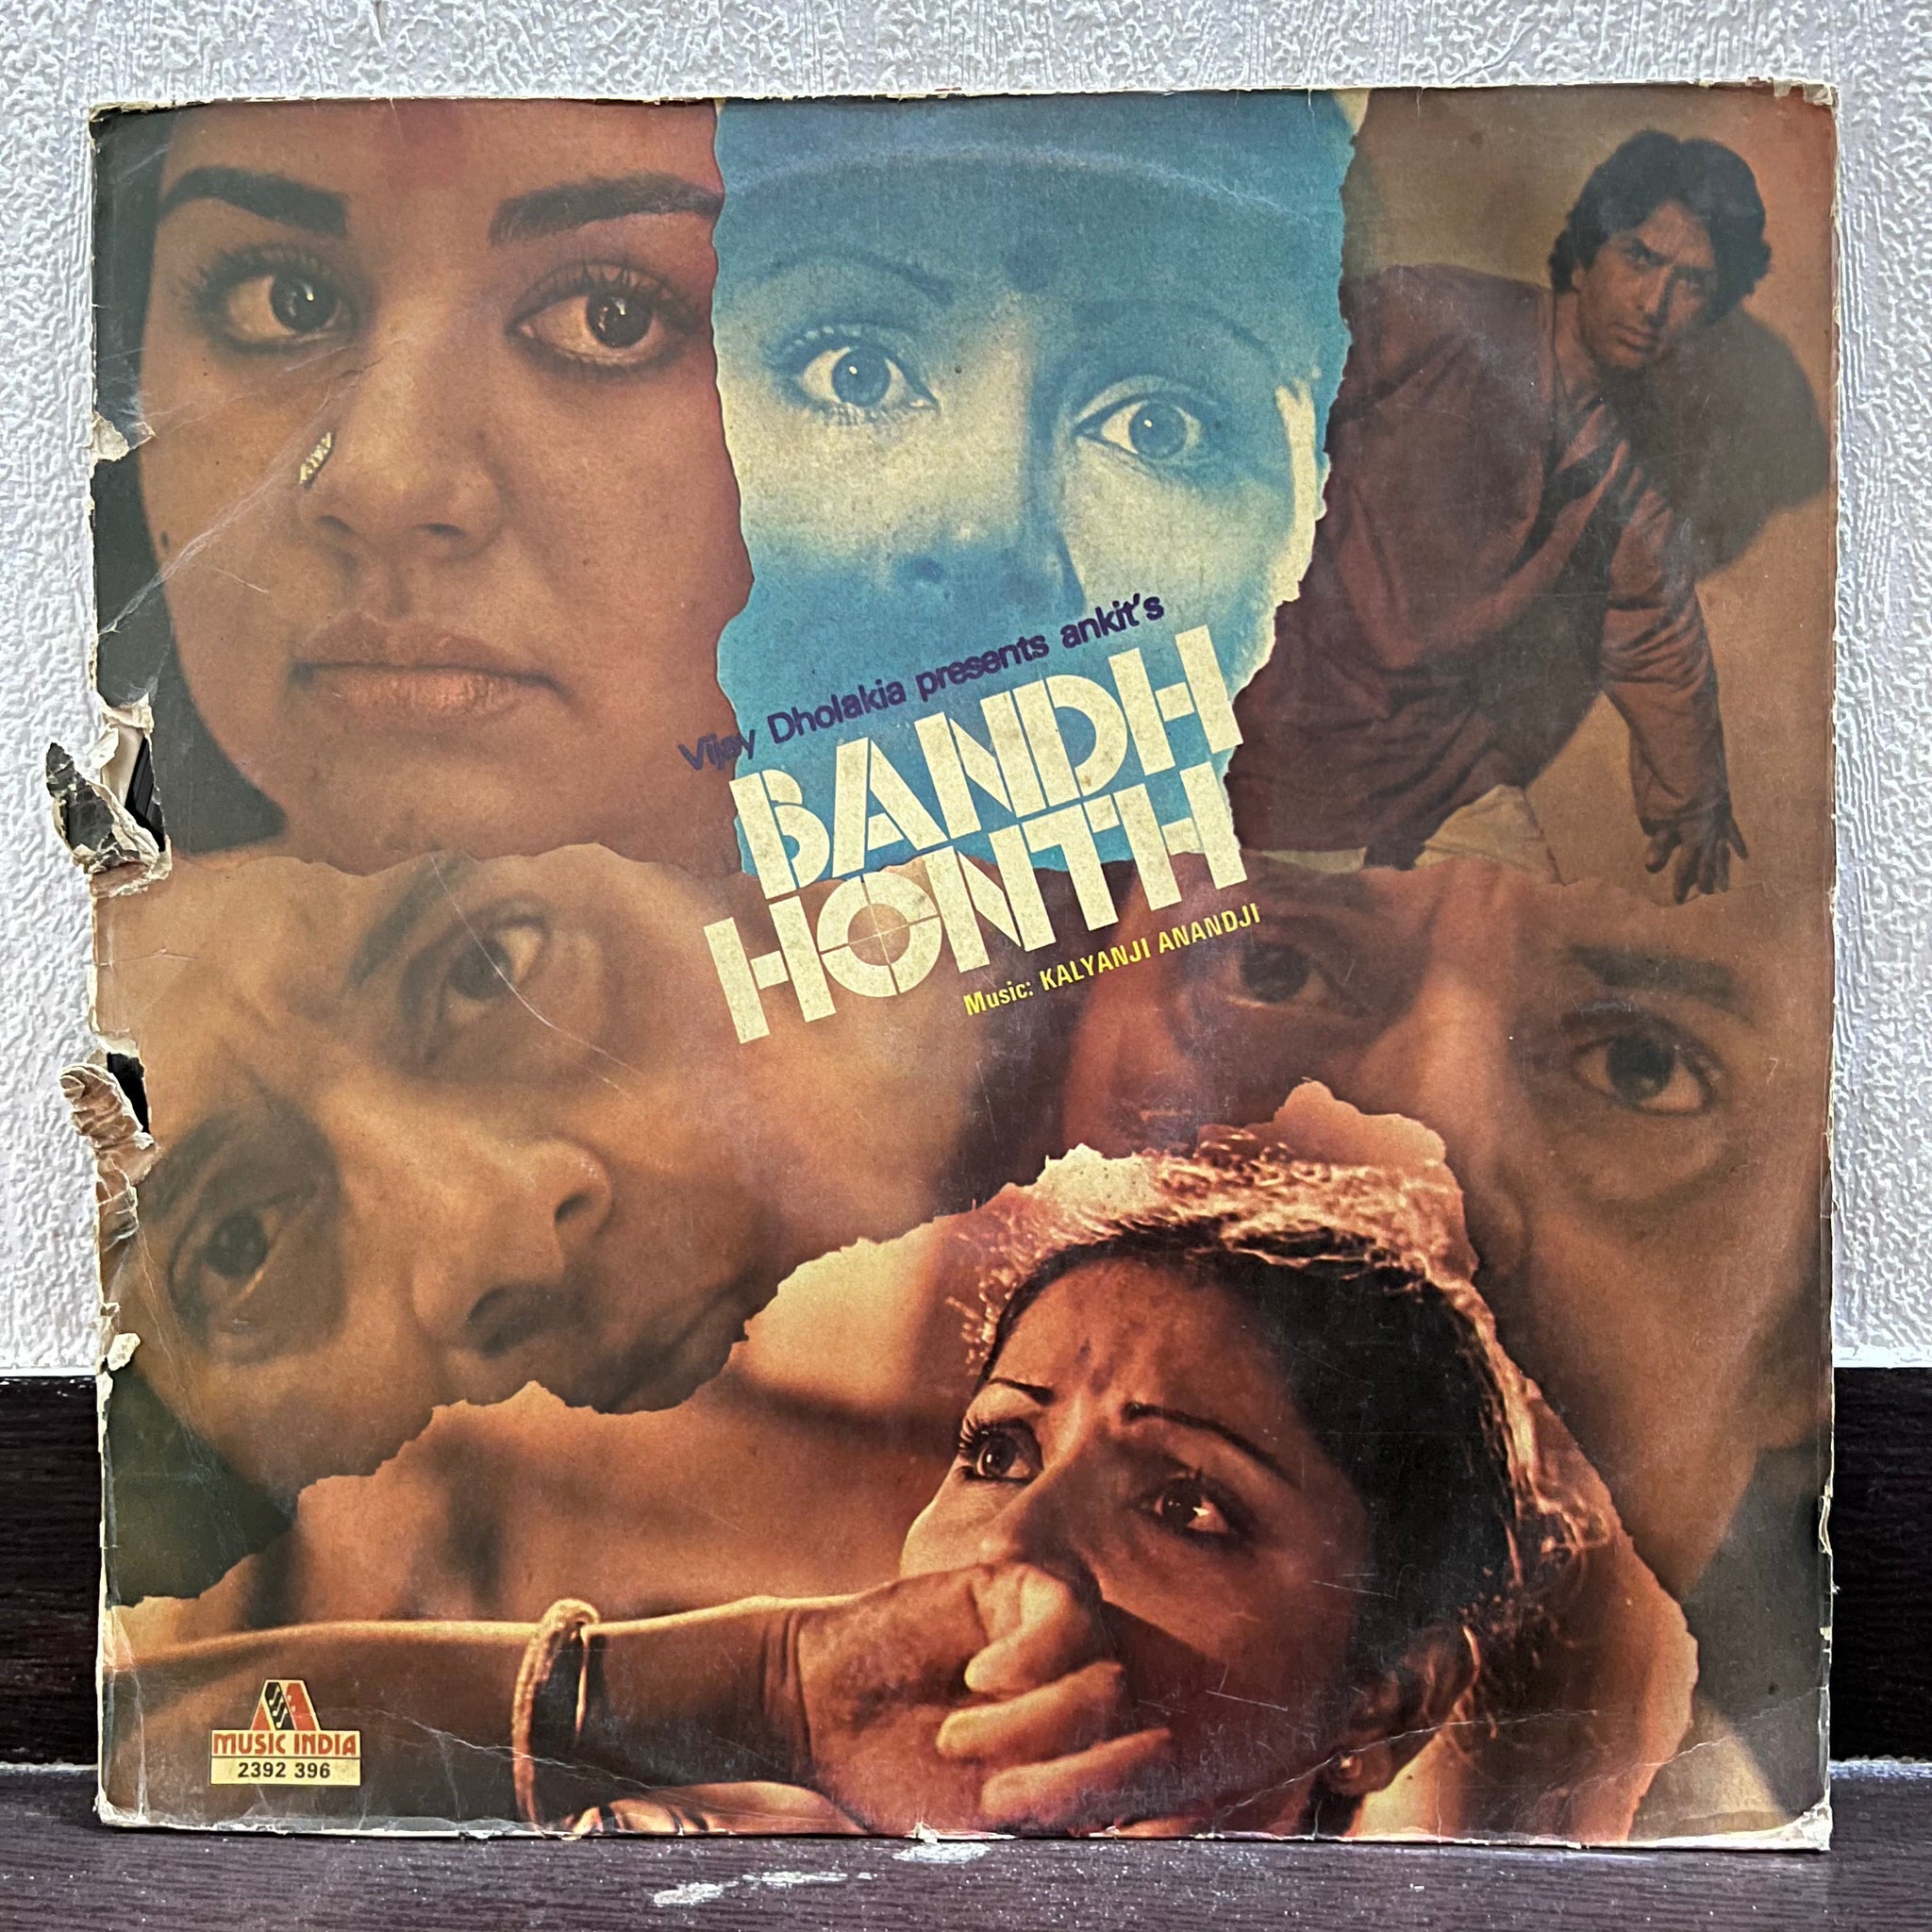 Bandh honth By Kalyanji anandji